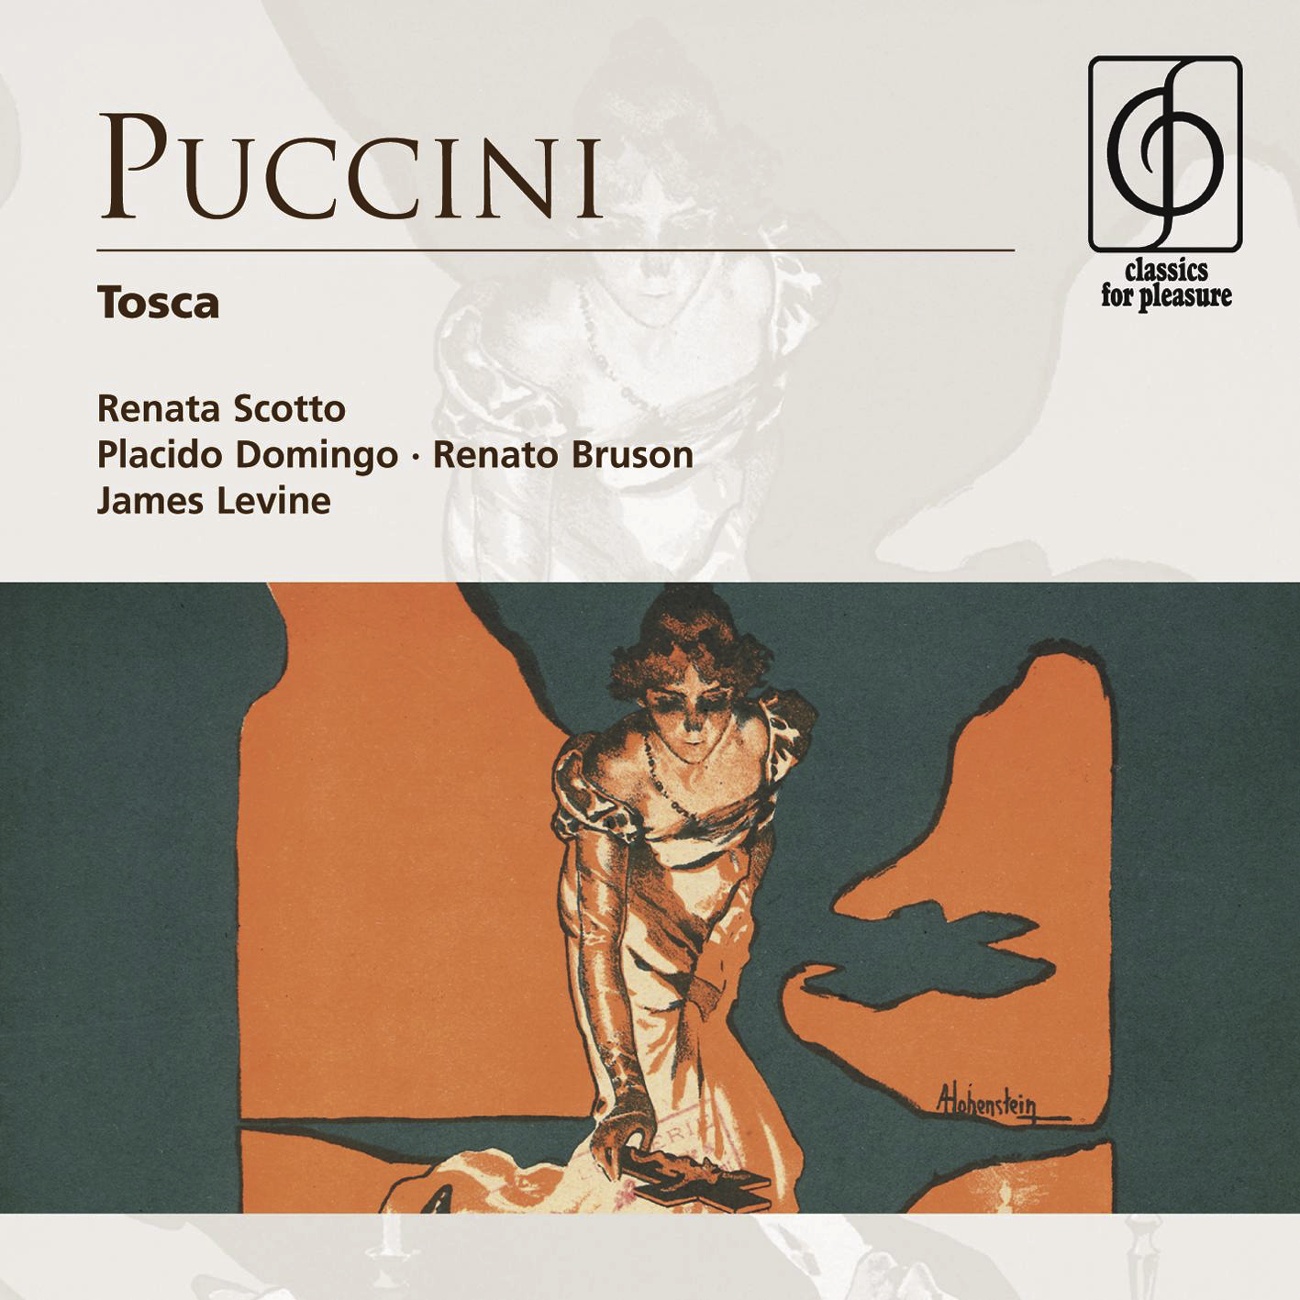 Tosca - Opera in three acts (1997 Digital Remaster), Act III: Presto, su!  Mario!  Mario! (Tosca, Sciarrone, Spoletta, Soldiers)